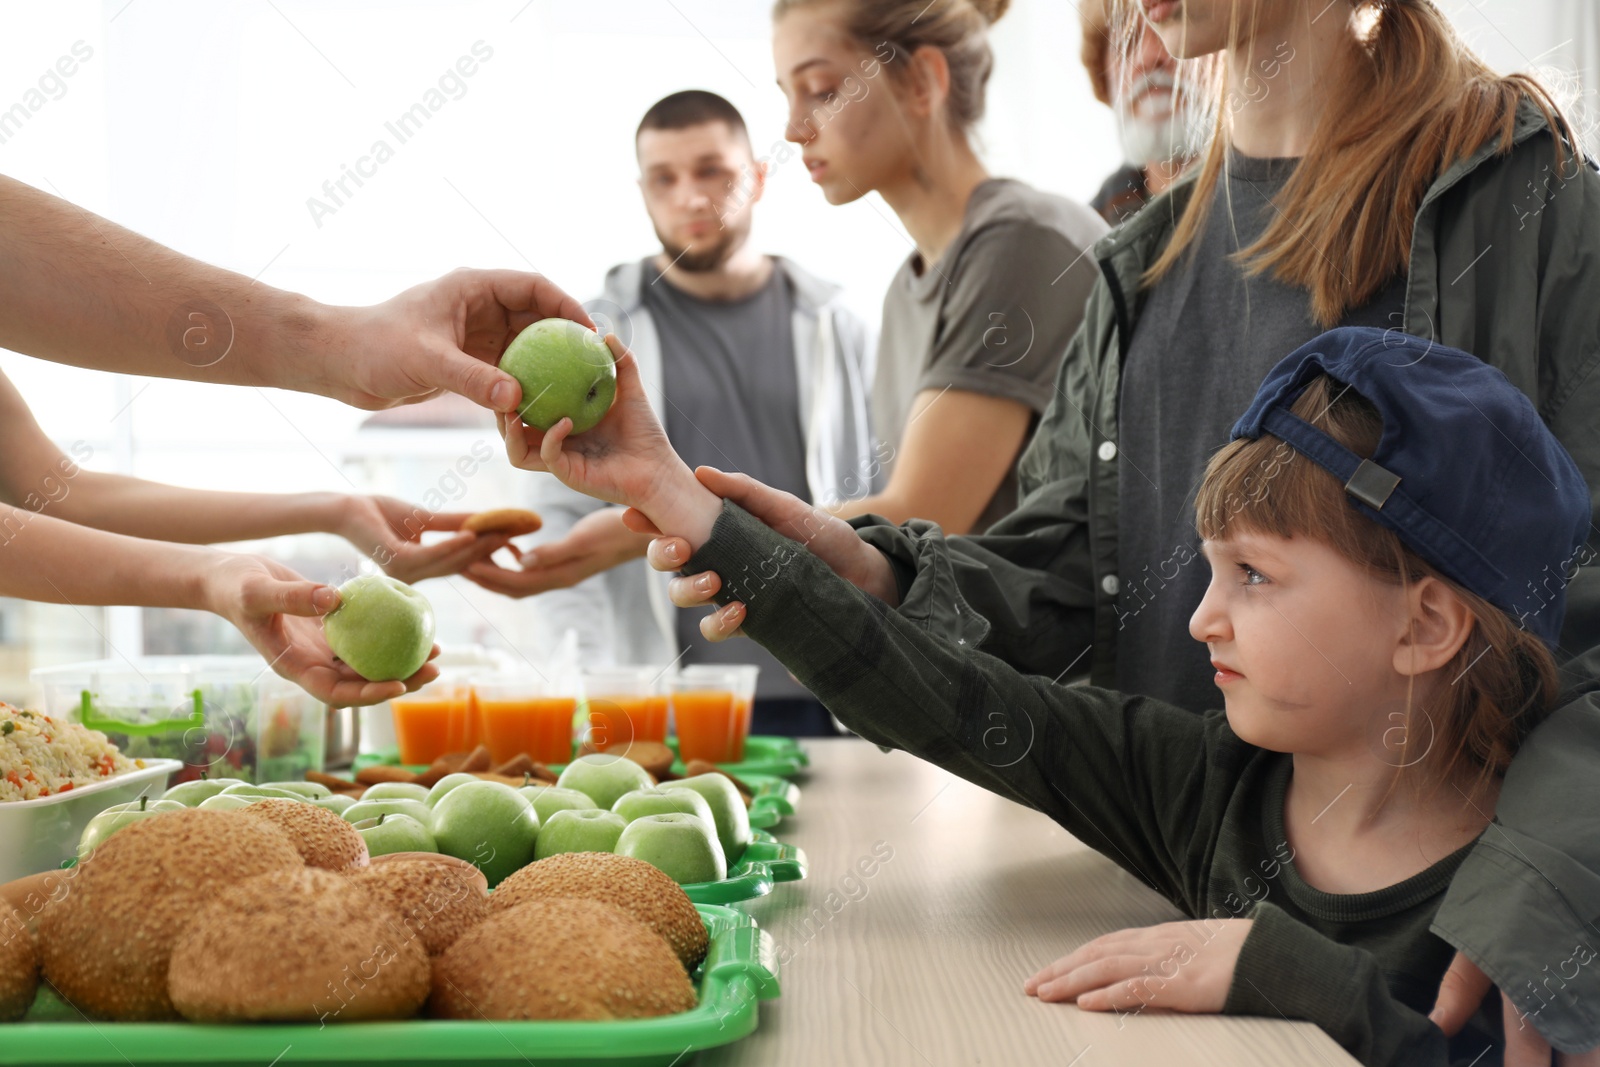 Photo of Volunteer giving apple to poor girl indoors